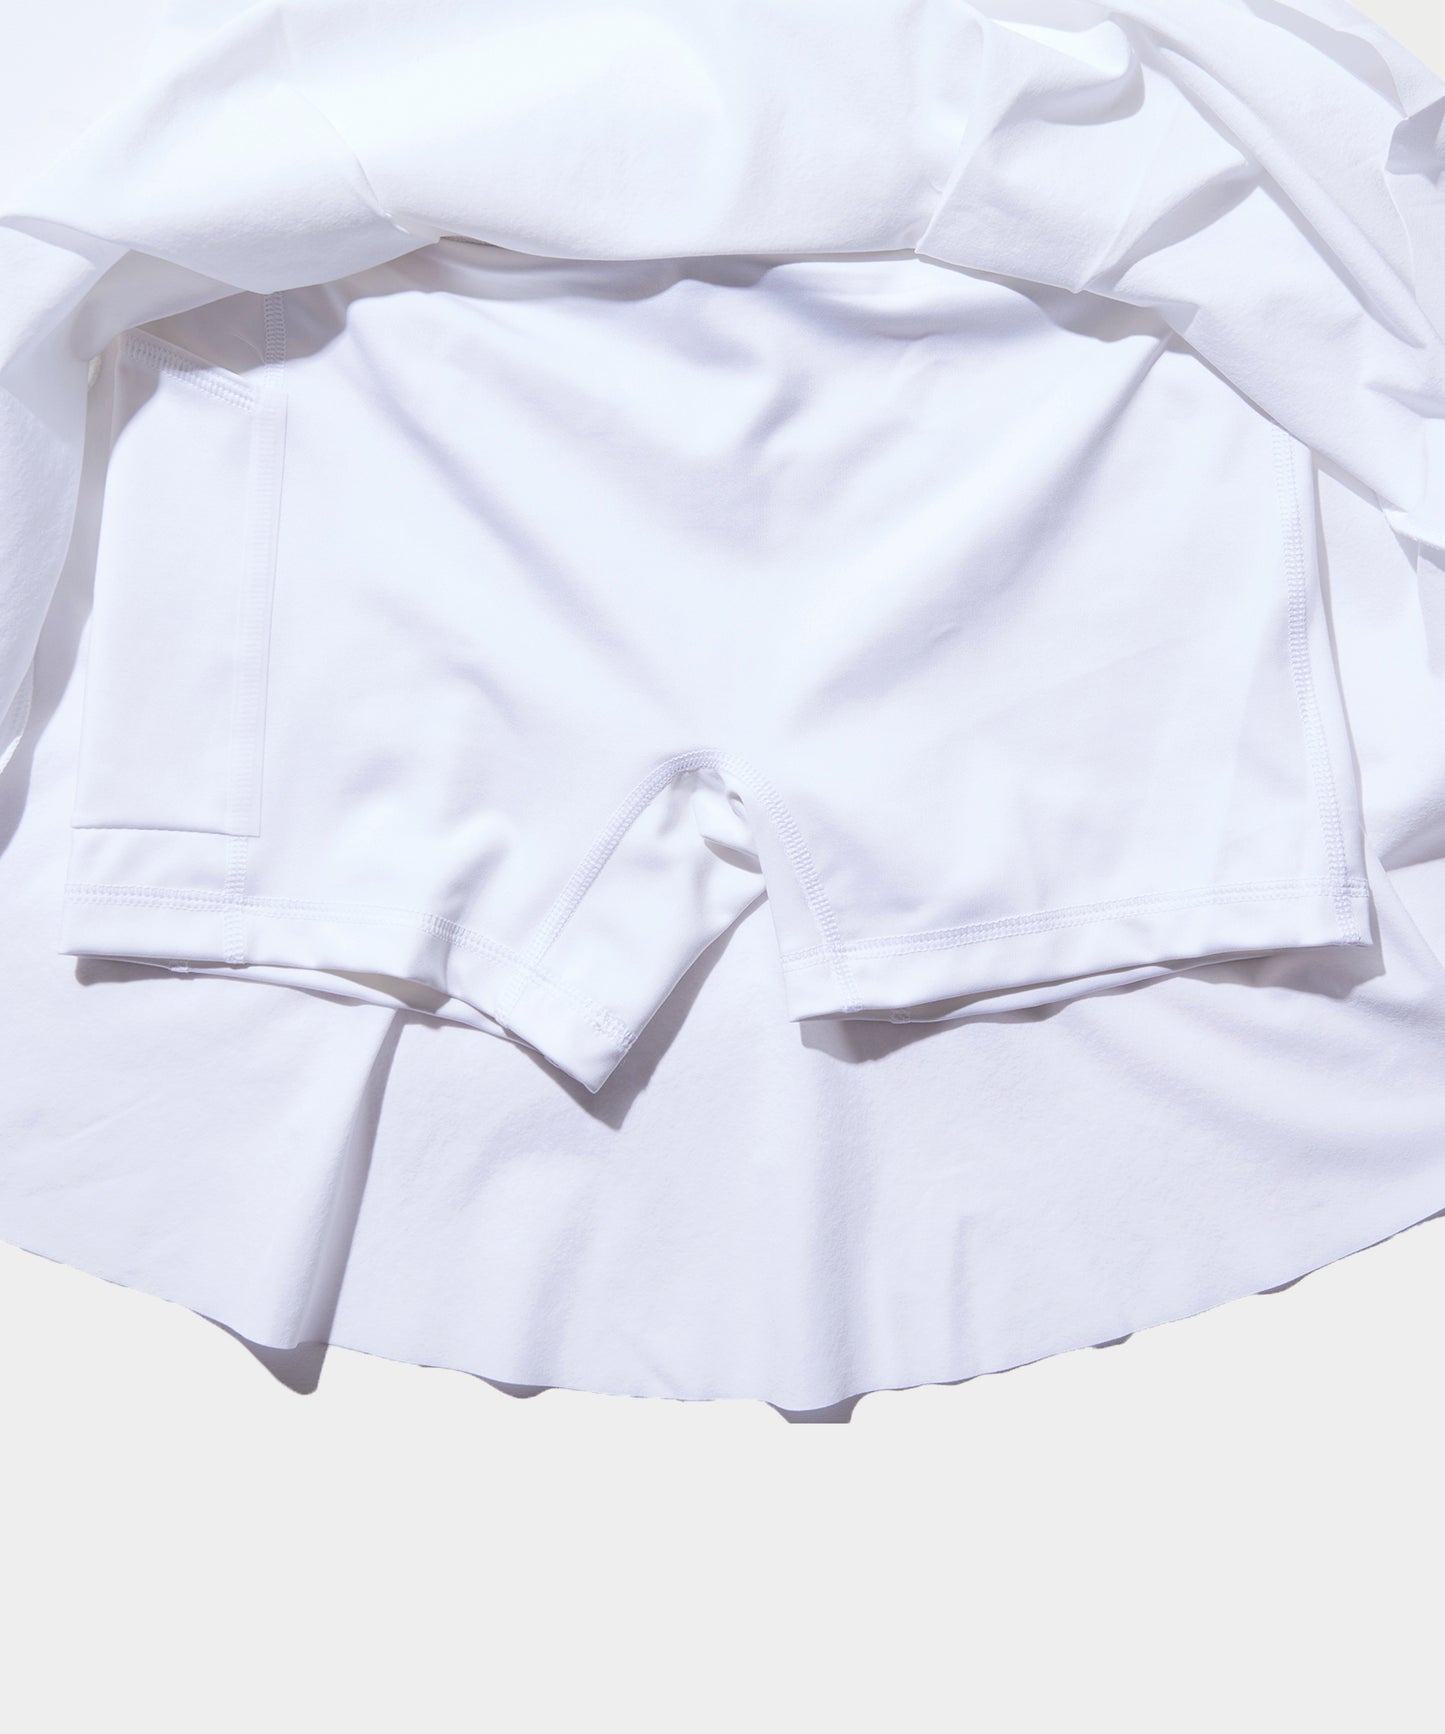 NIKE Dri-FIT Women's Long Golf Skirt WHITE